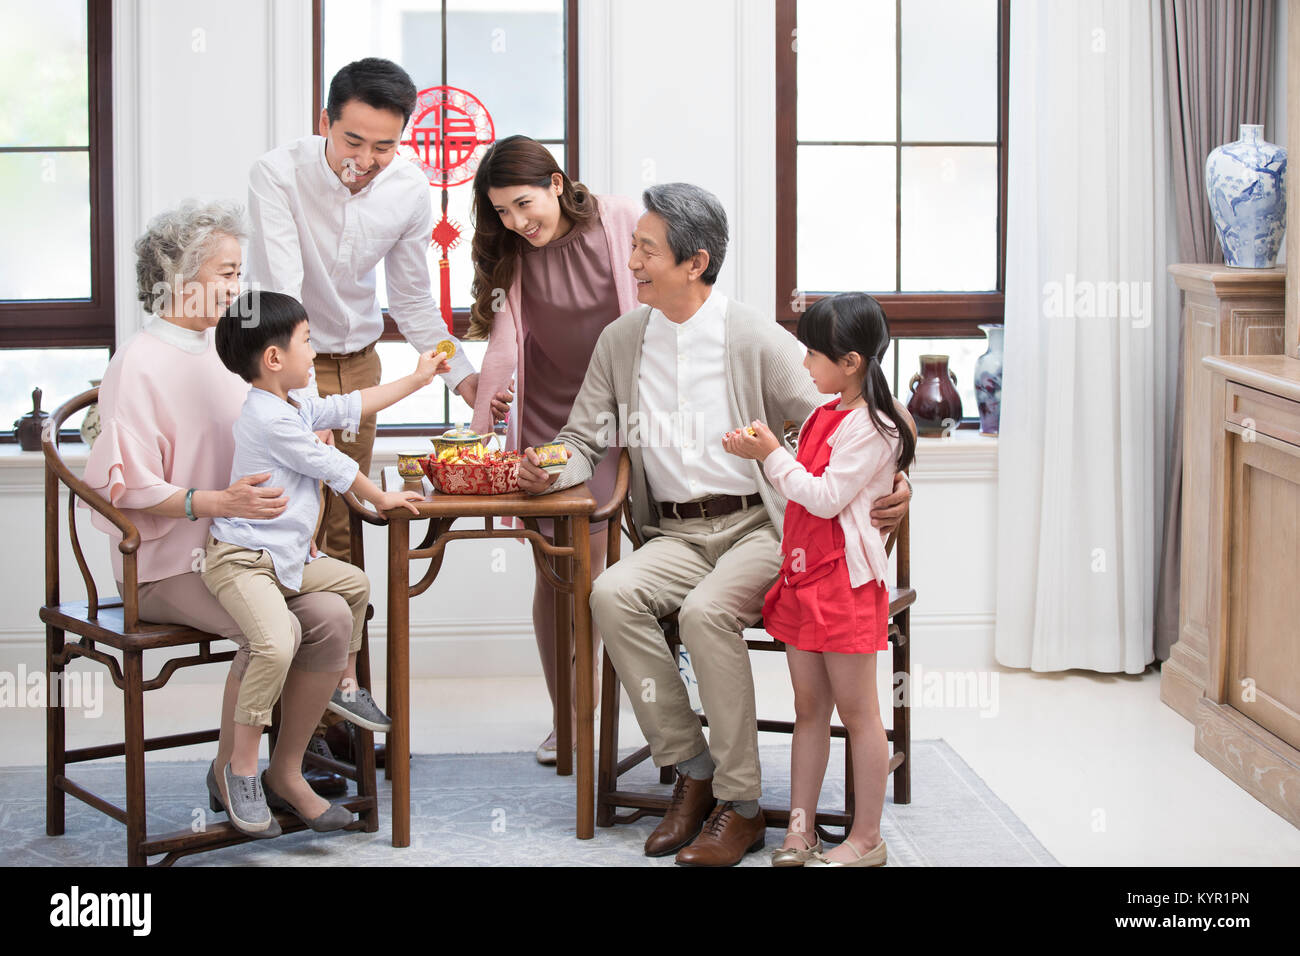 La famiglia felice per celebrare il capodanno cinese Foto Stock